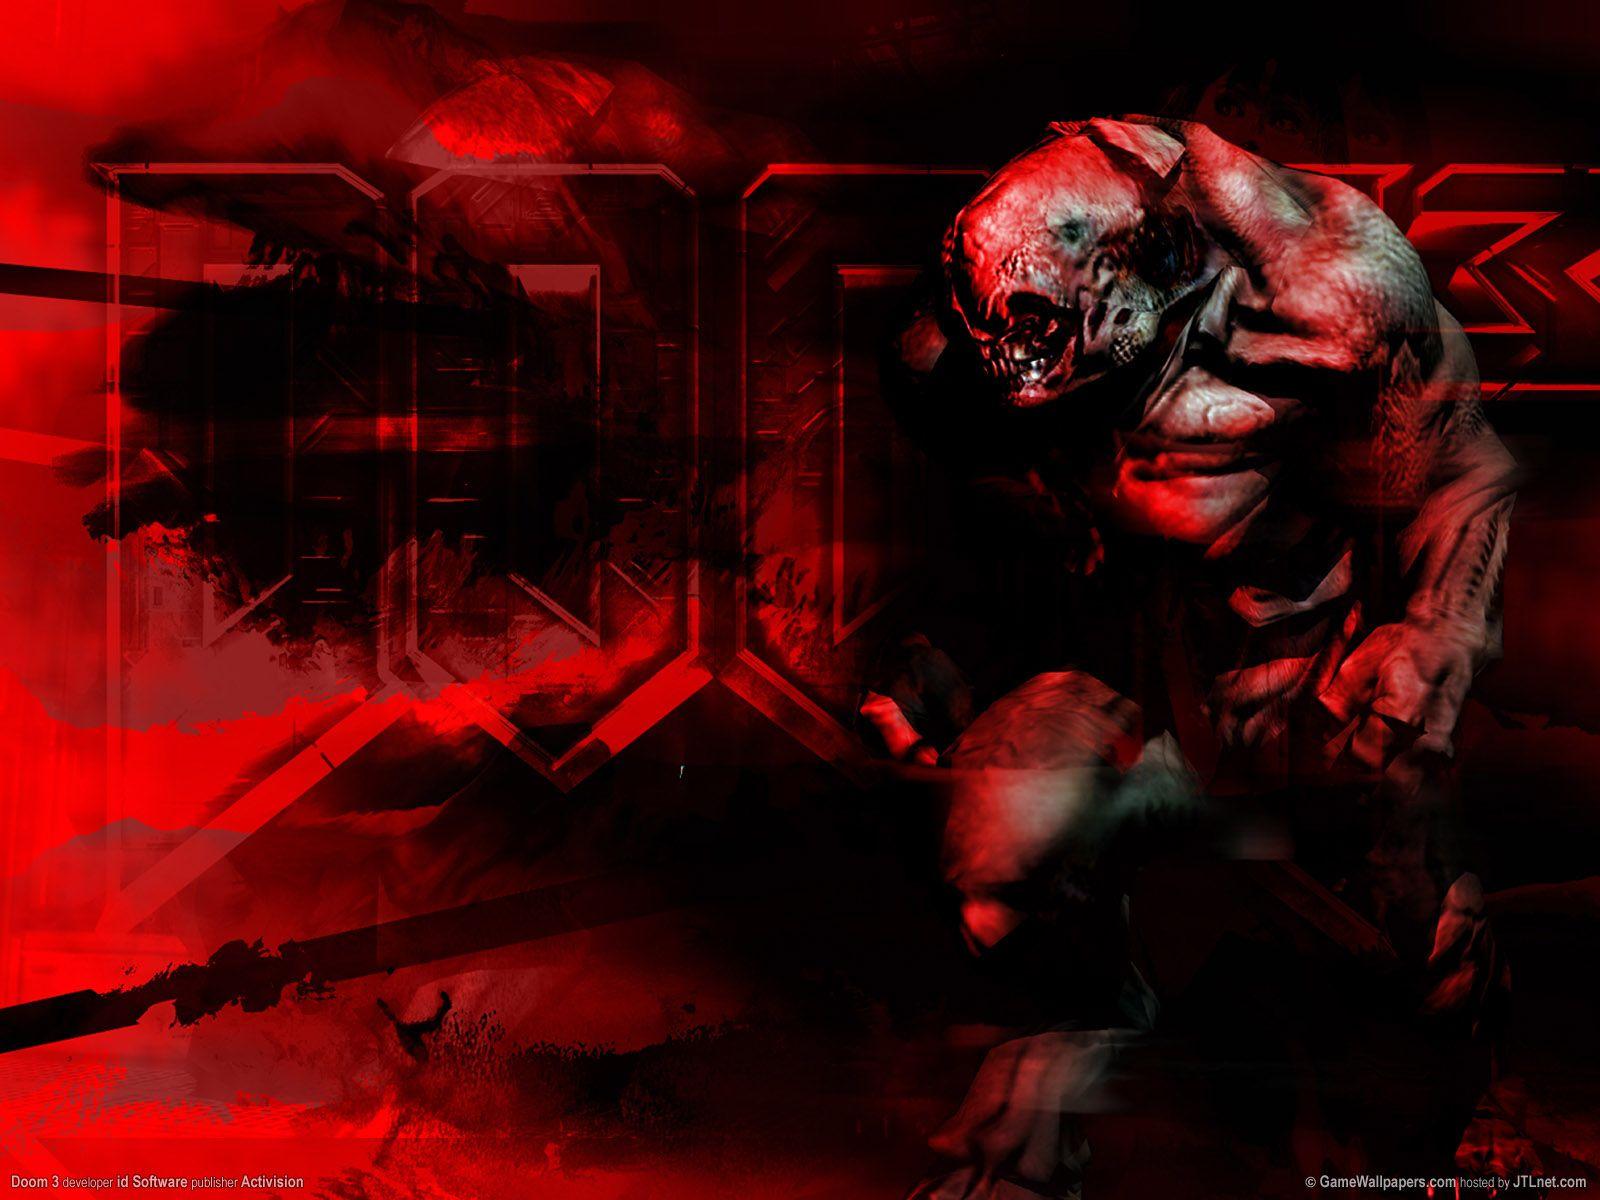 Doom 3 Wallpaper